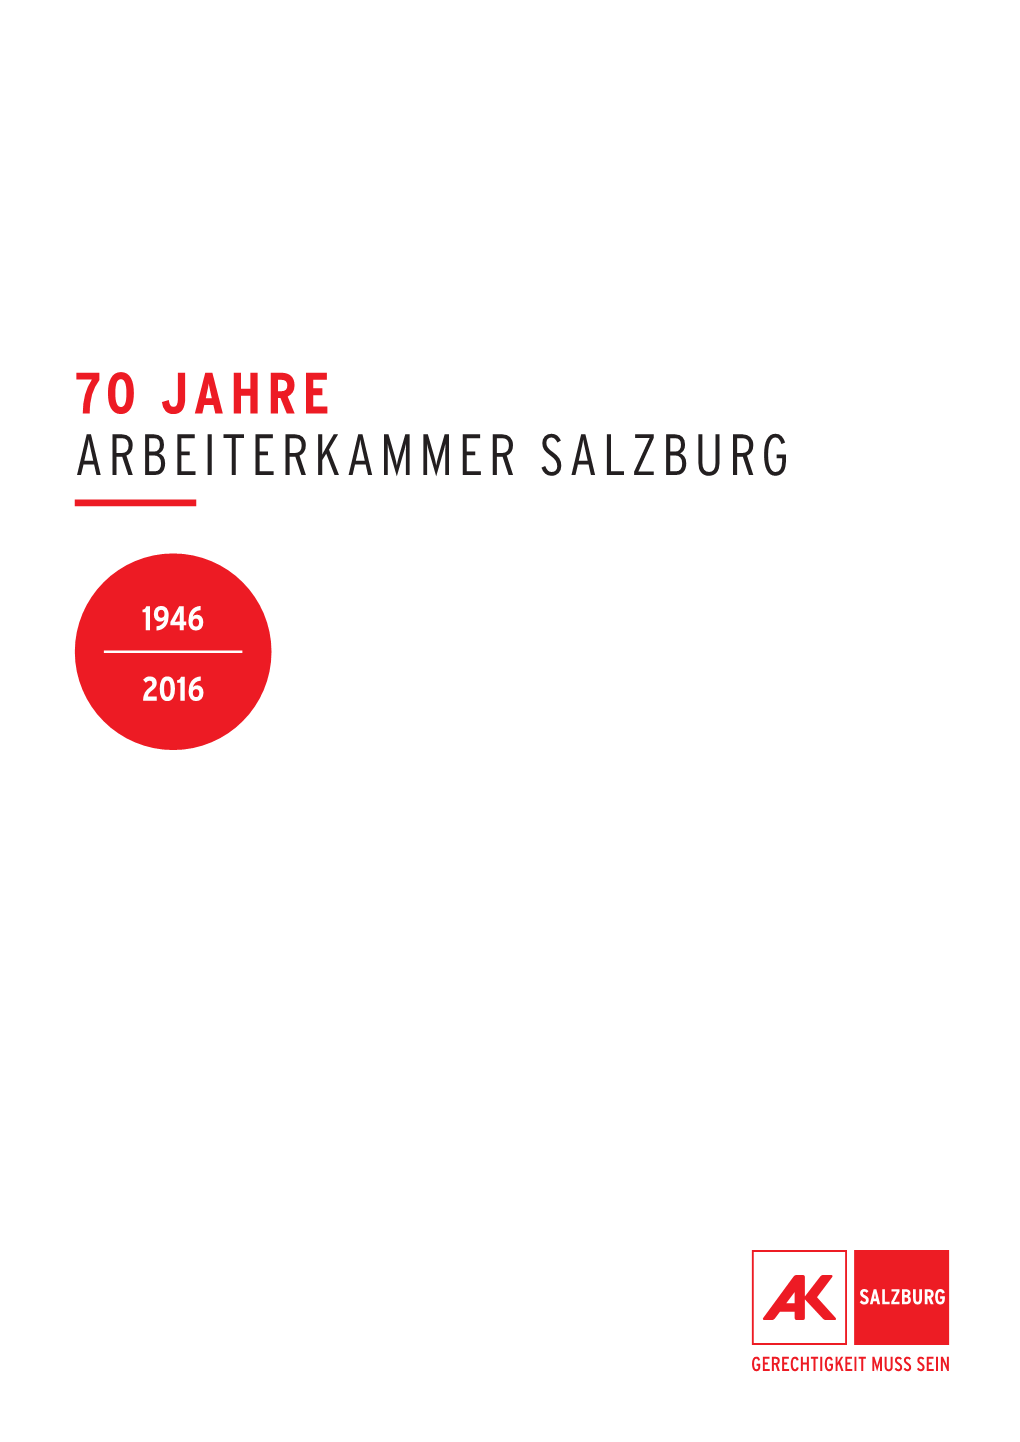 70 Jahre Arbeiterkammer Salzburg